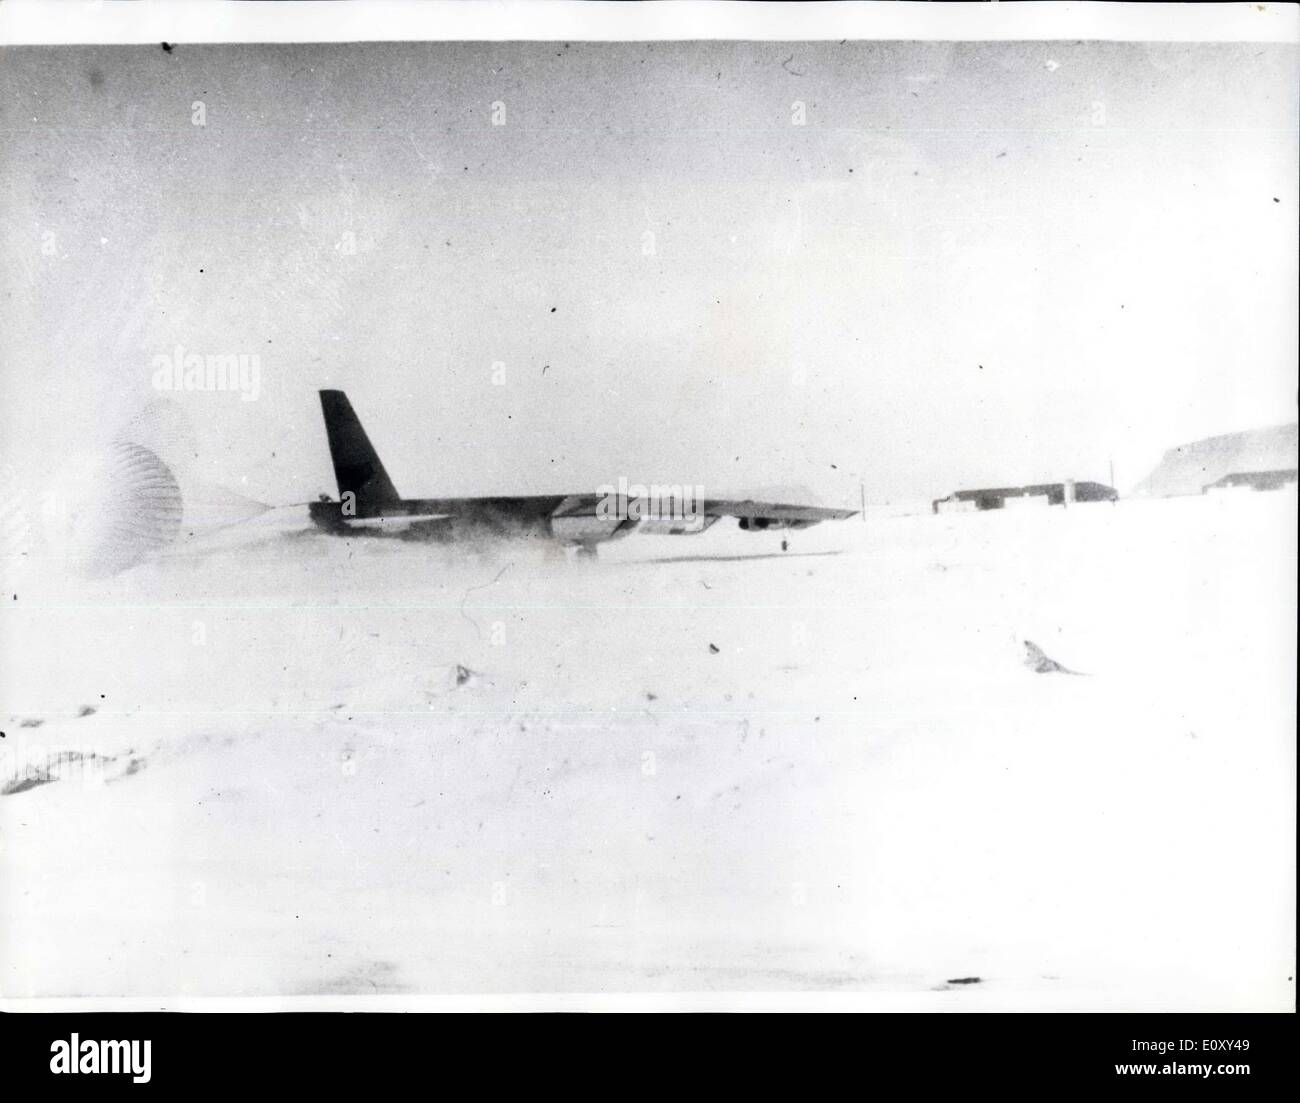 Gen 23, 1968 - Ricerca per H-bombe dopo bombardiere americano si è schiantato in Groenlandia: una ricerca viene effettuata da American Air Force squadre per quattro bombe di idrogeno a bordo di un bombardiere statunitense che si è schiantato in ghiaccio-mare coperta quando attenpting un atterraggio di emergenza. Il piano, un bombardiere B-52, si è schiantato ieri in Groenlandia del nord della baia di Star-sette miglia dalla American Air Force Base a Thule. Una dichiarazione detta il bombardiere B-52 di armi nucleari sono stati disarmati annuncio non vi è alcun pericolo di esplosione nucleare Foto Stock